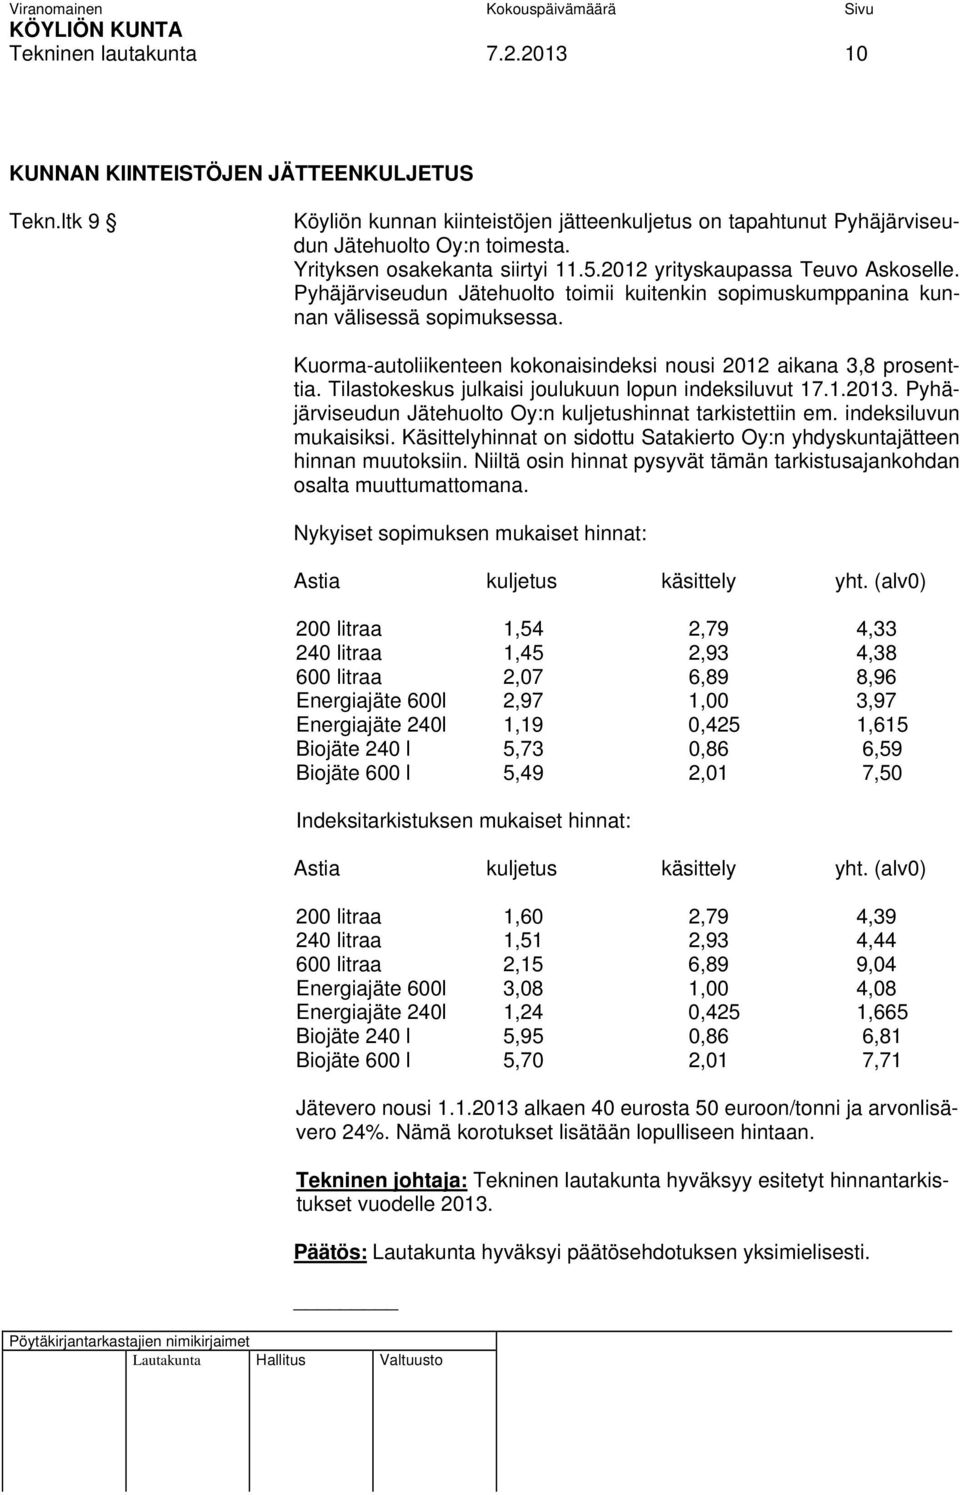 Kuorma-autoliikenteen kokonaisindeksi nousi 2012 aikana 3,8 prosenttia. Tilastokeskus julkaisi joulukuun lopun indeksiluvut 17.1.2013. Pyhäjärviseudun Jätehuolto Oy:n kuljetushinnat tarkistettiin em.